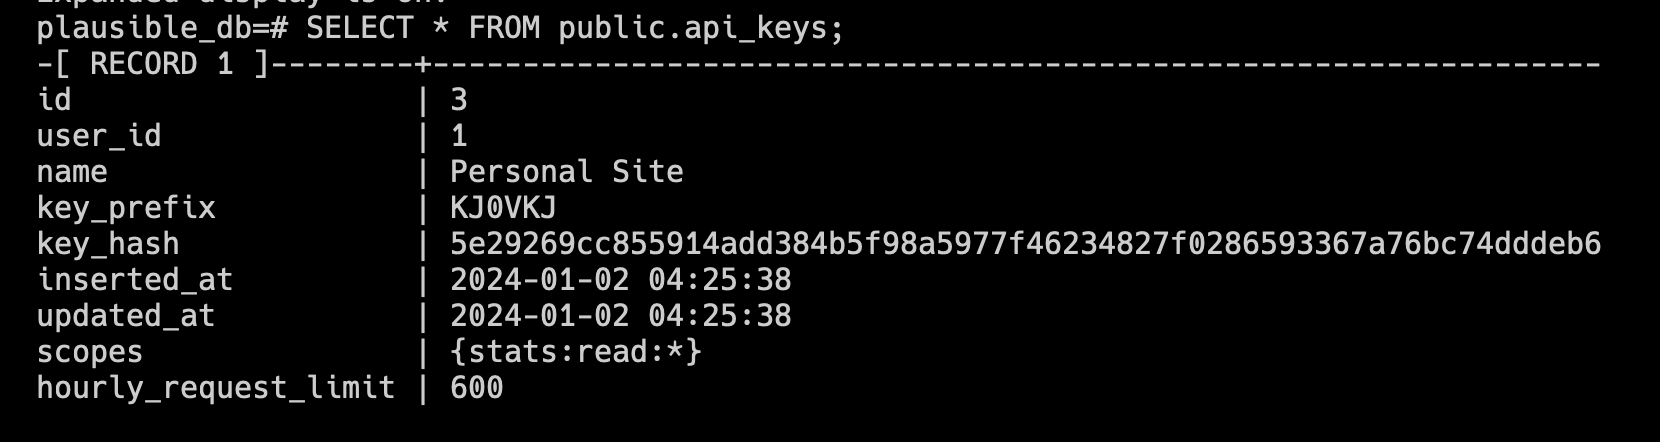 example of API key records